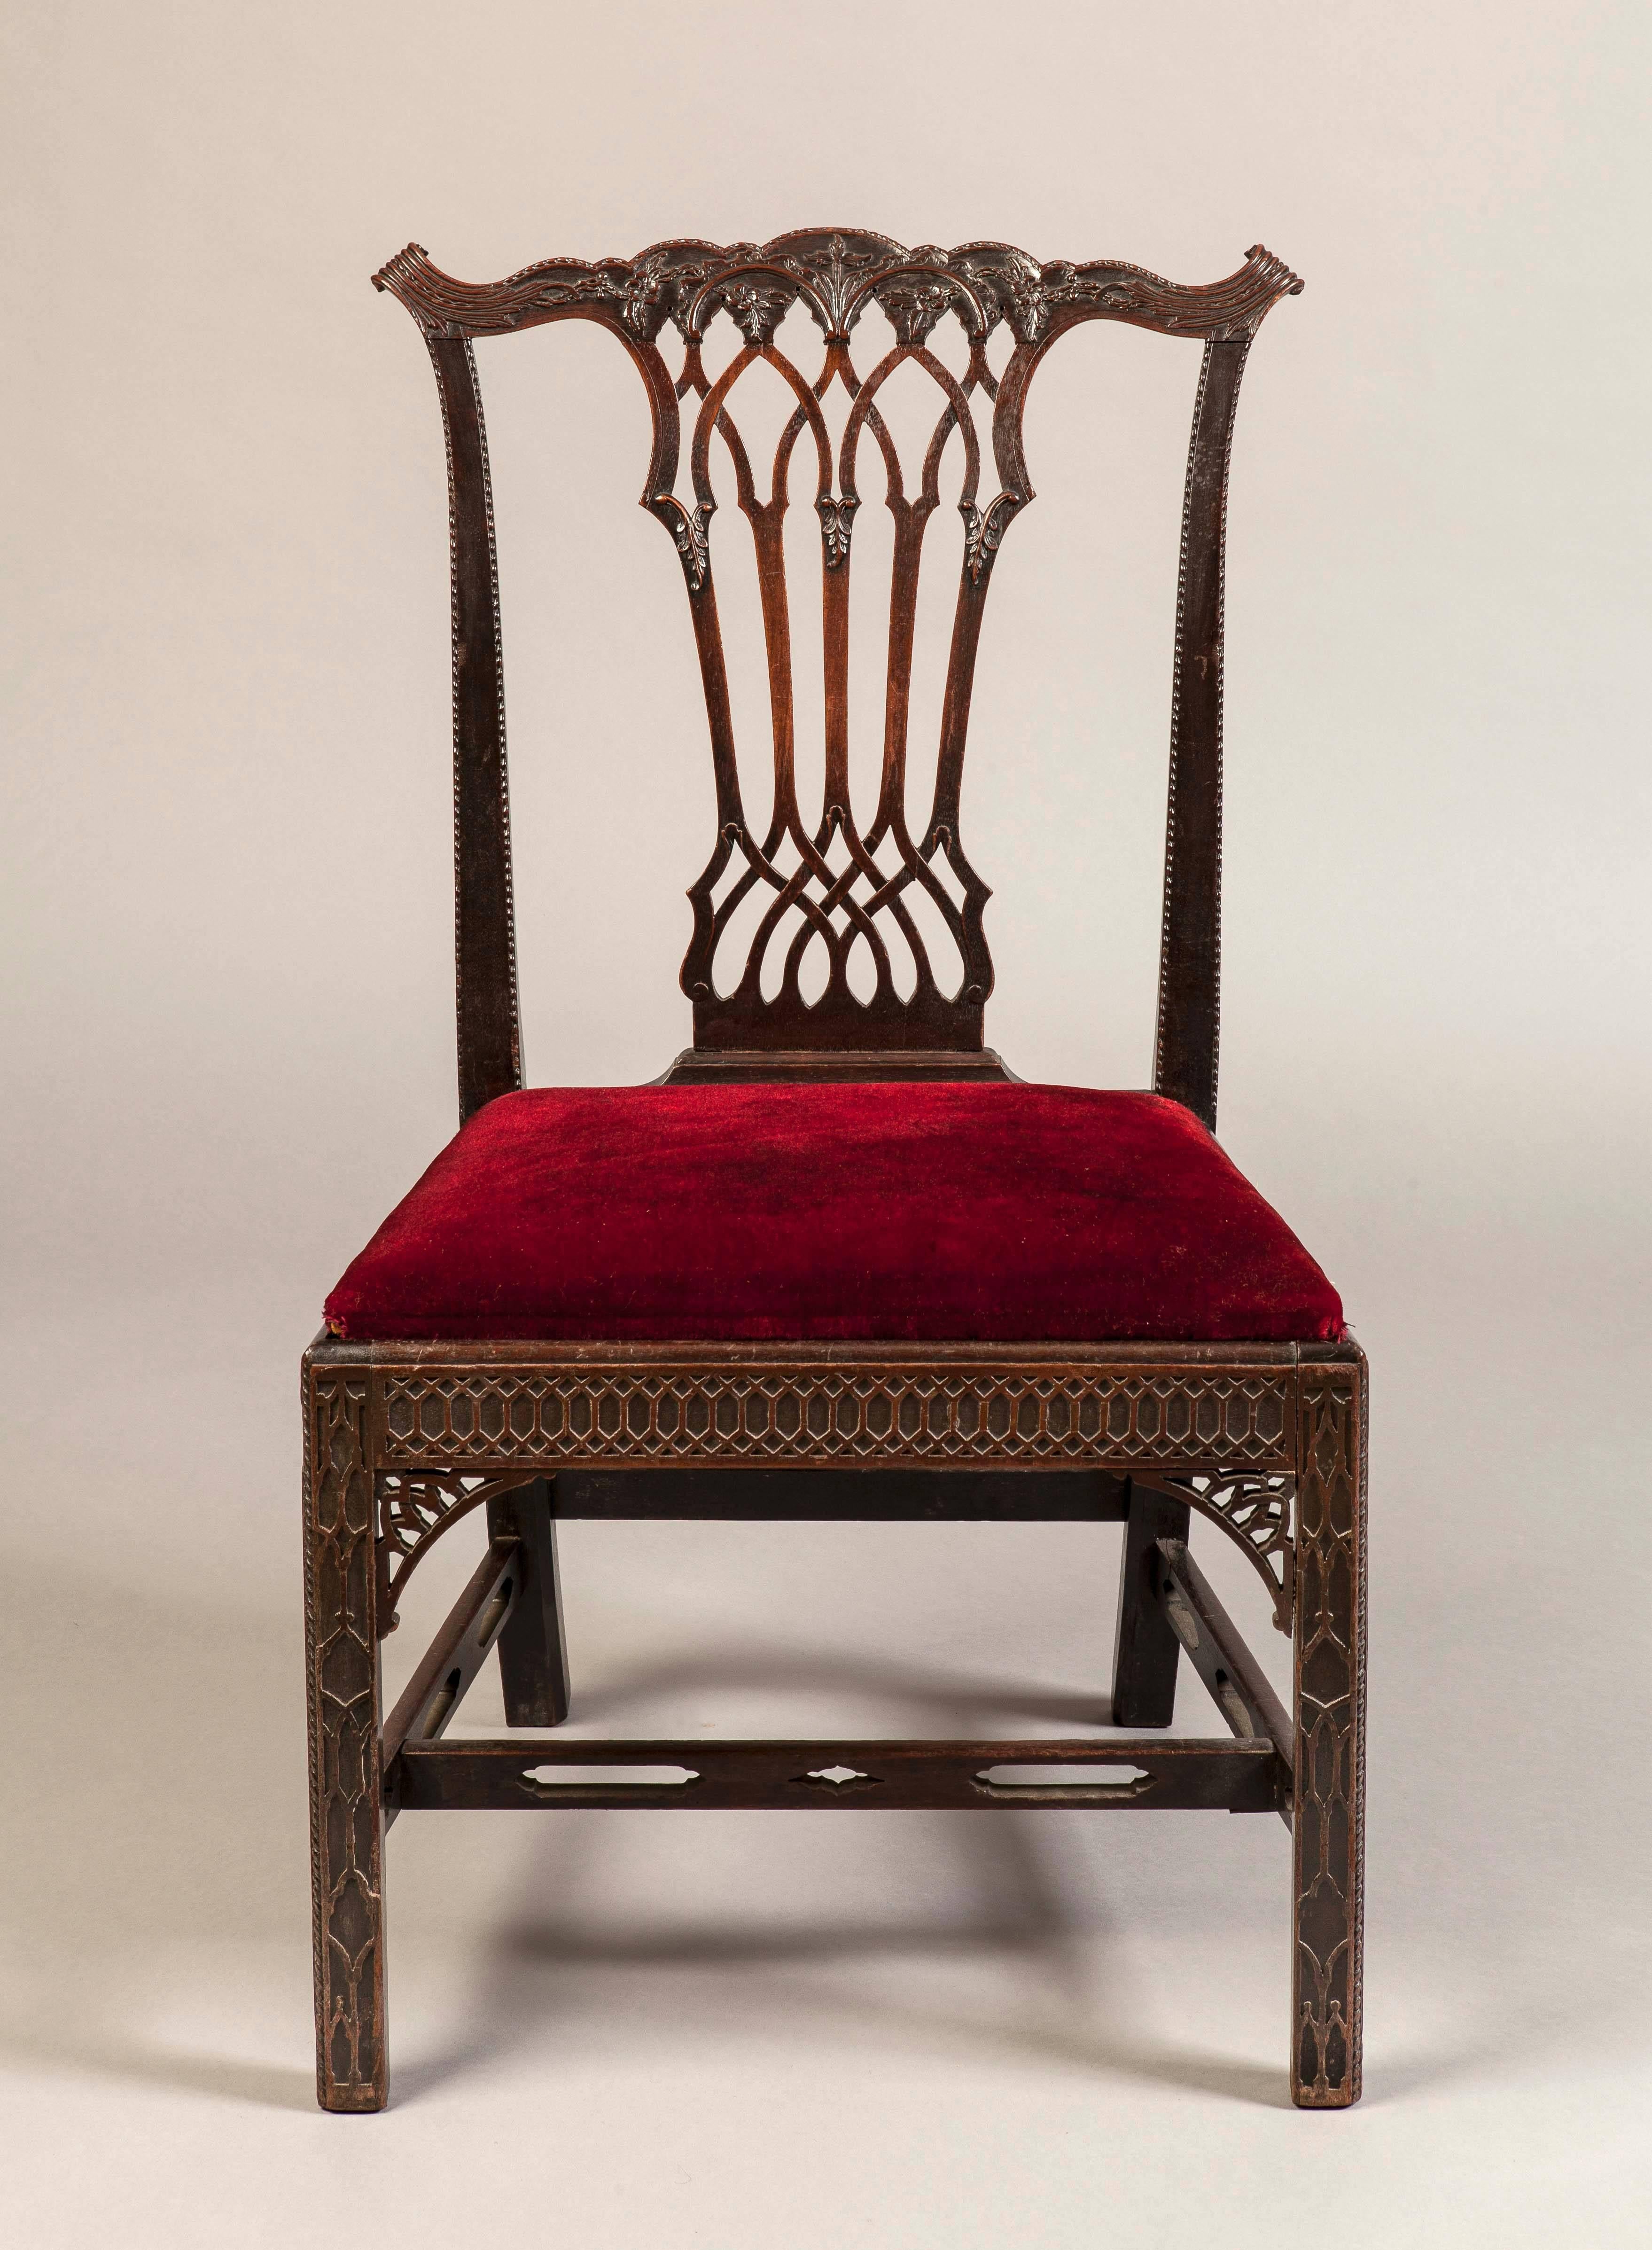 Un bon ensemble de huit chaises d'appoint de style gothique géorgien

Construite en acajou, qui a été sculpté avec précision, elle s'élève sur des pieds de forme carrée, chanfreinés et sculptés de frettes aveugles, et sur des brancards percés. Les